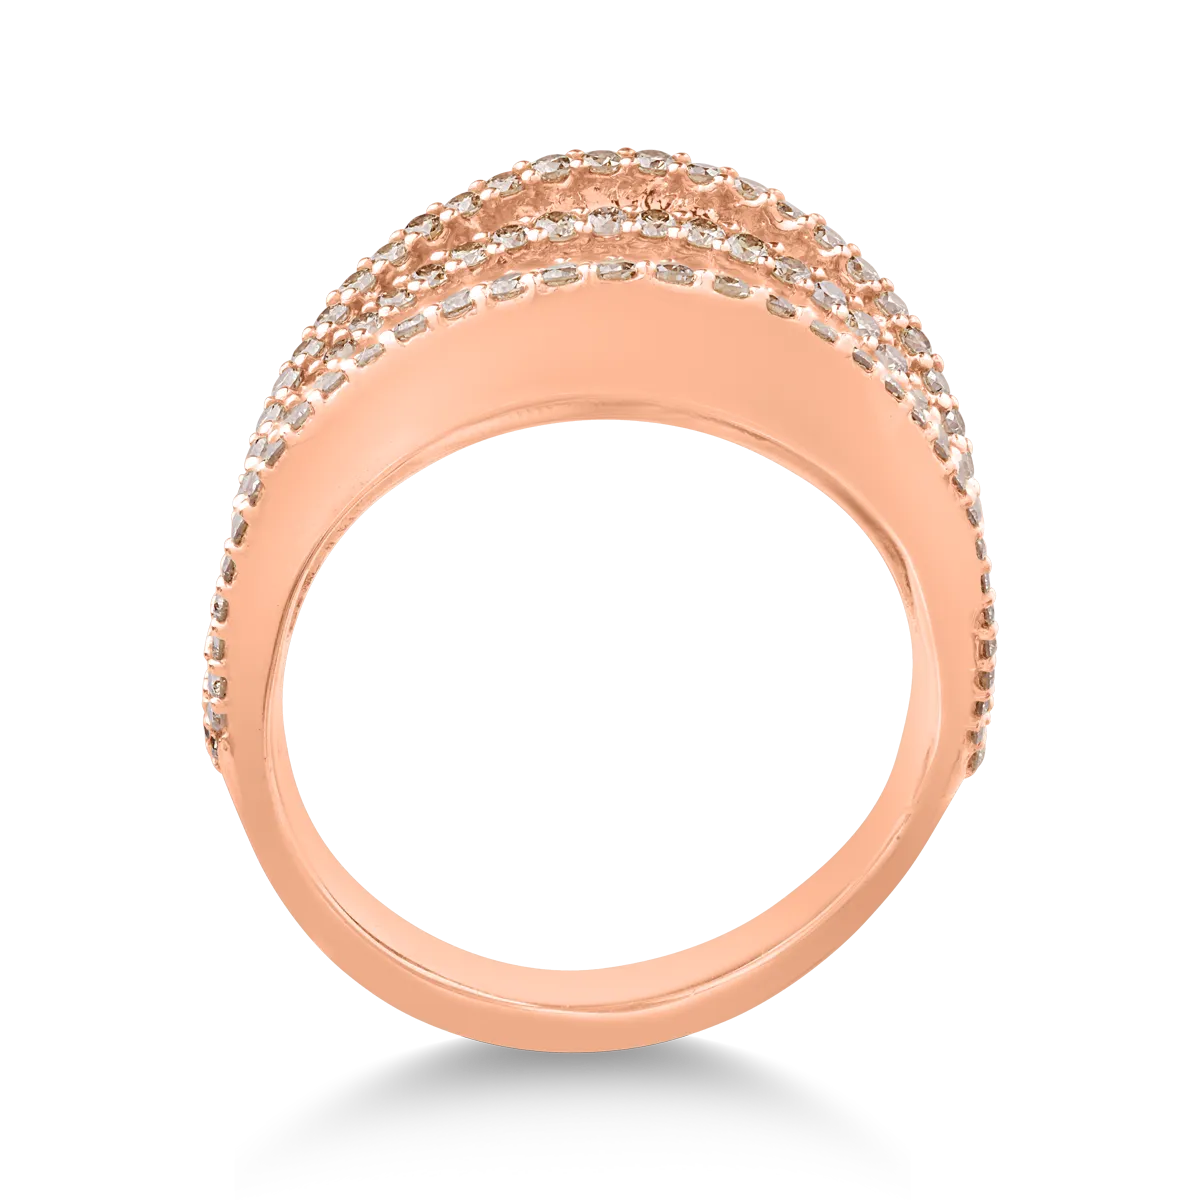 18k rózsaszín arany gyűrű, barna gyémántokkal 2.18ct